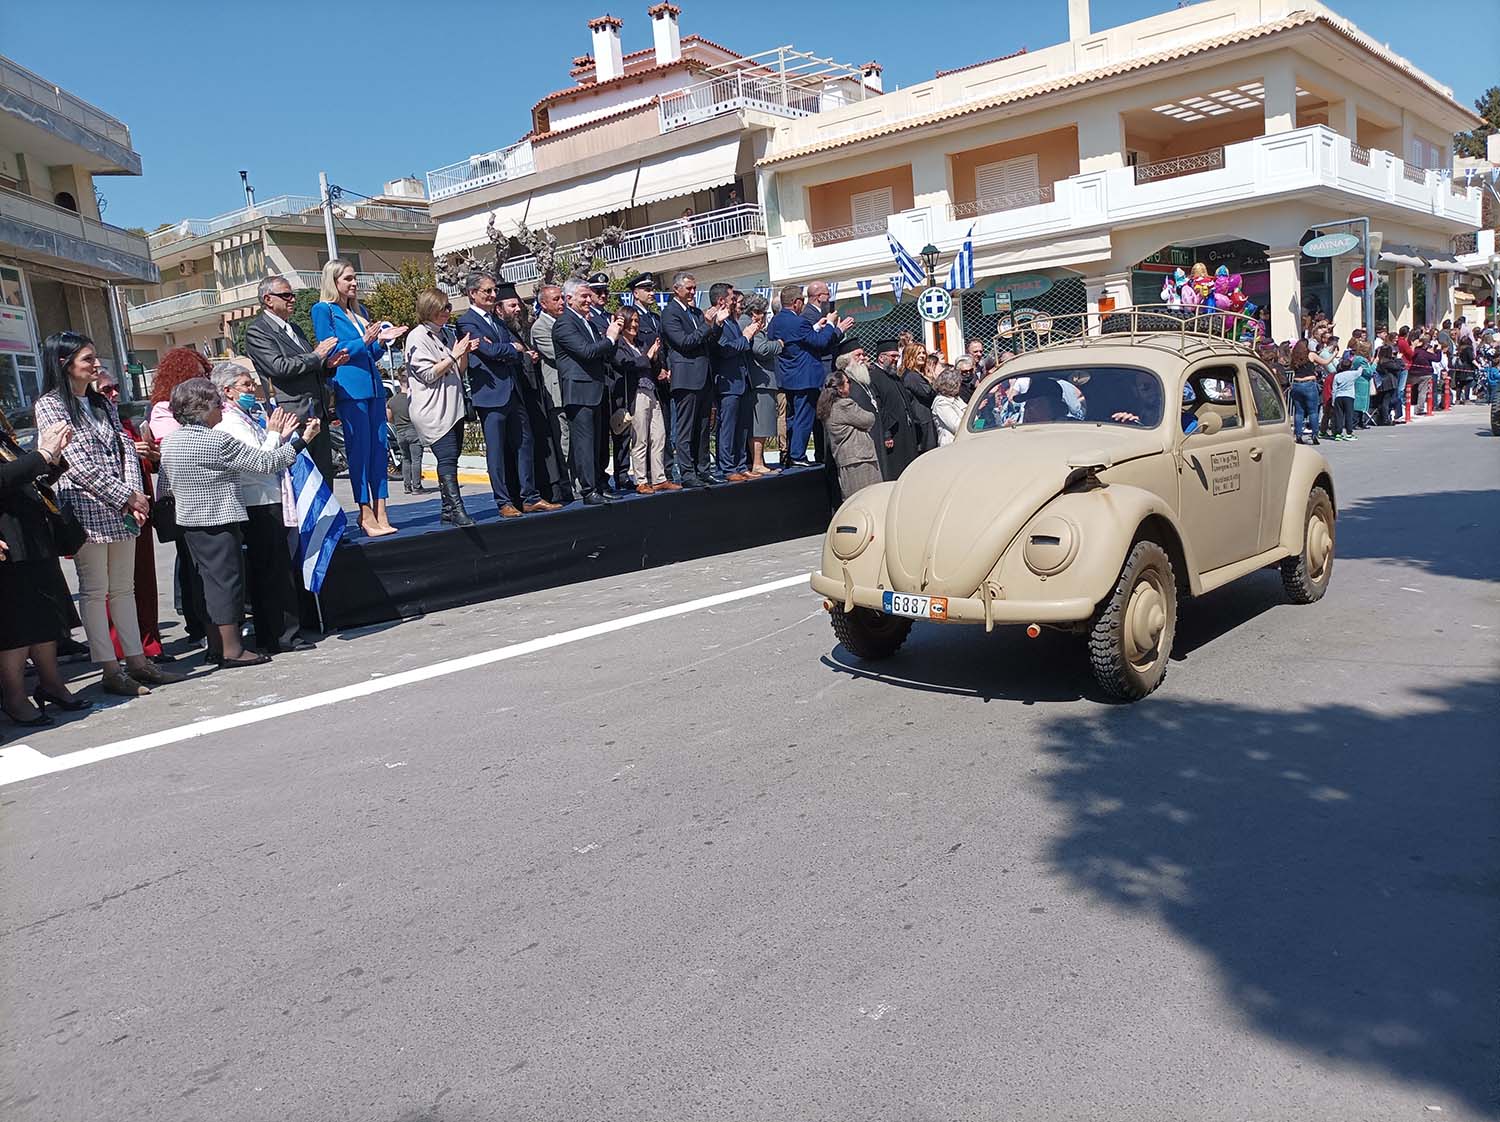 Δήμος Παιανίας: Ιστορικά πολεμικά οχήματα έδωσαν το παρών στην παρέλαση της 25ης Μαρτίου